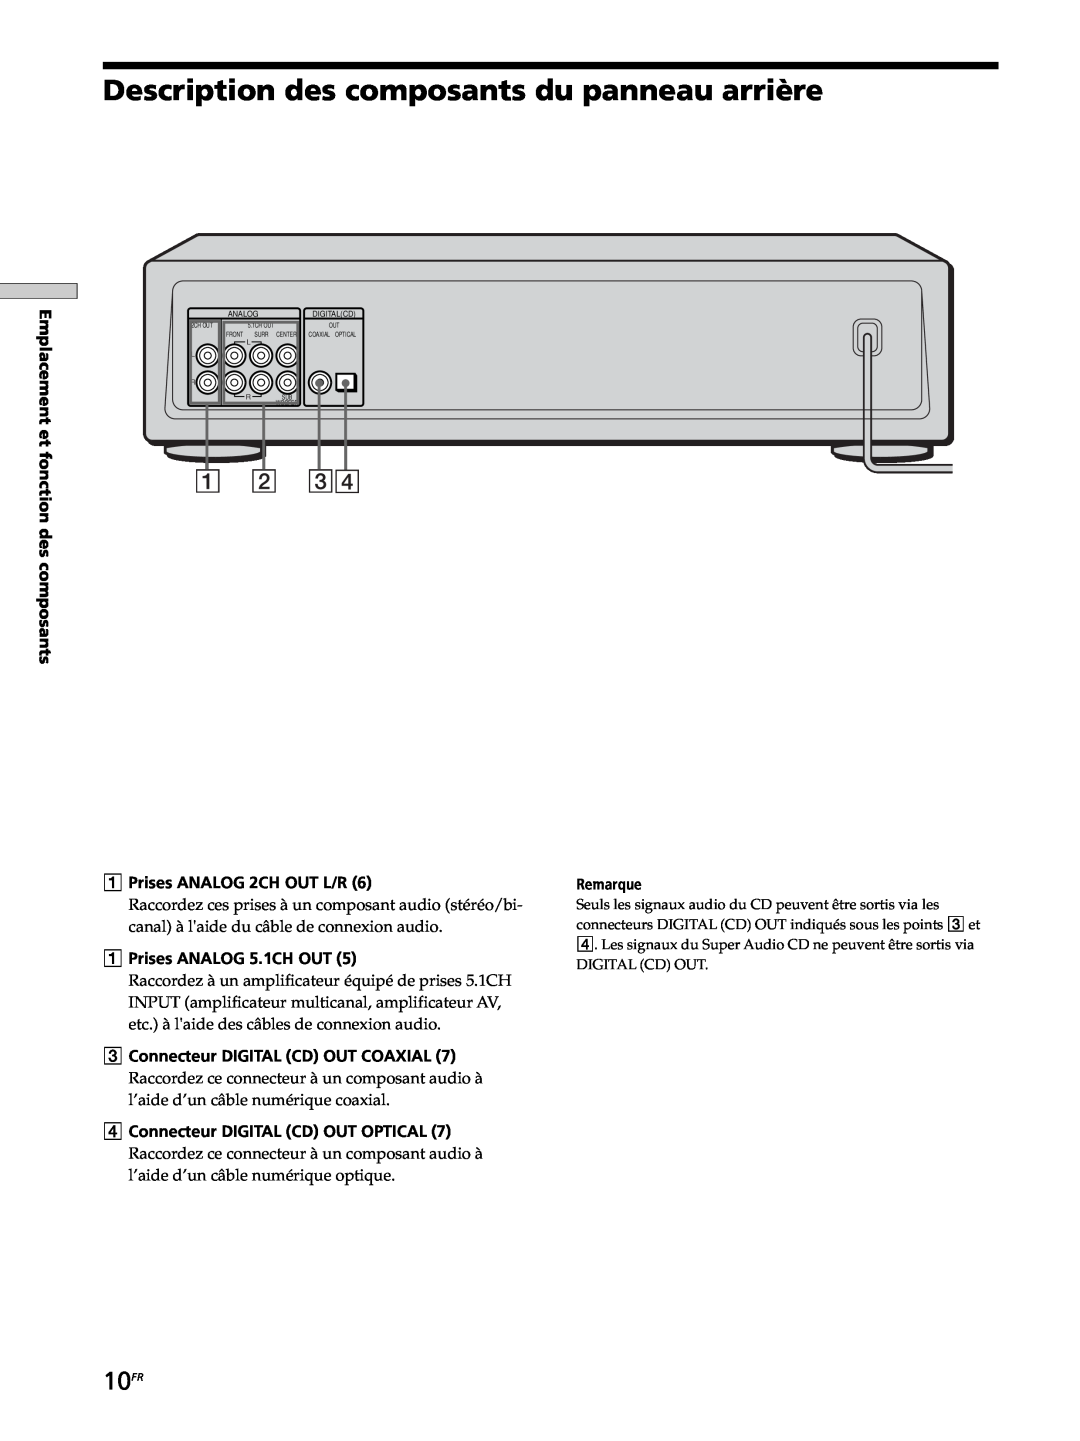 Sony SCD-XB770 operating instructions Description des composants du panneau arrière, 10FR 